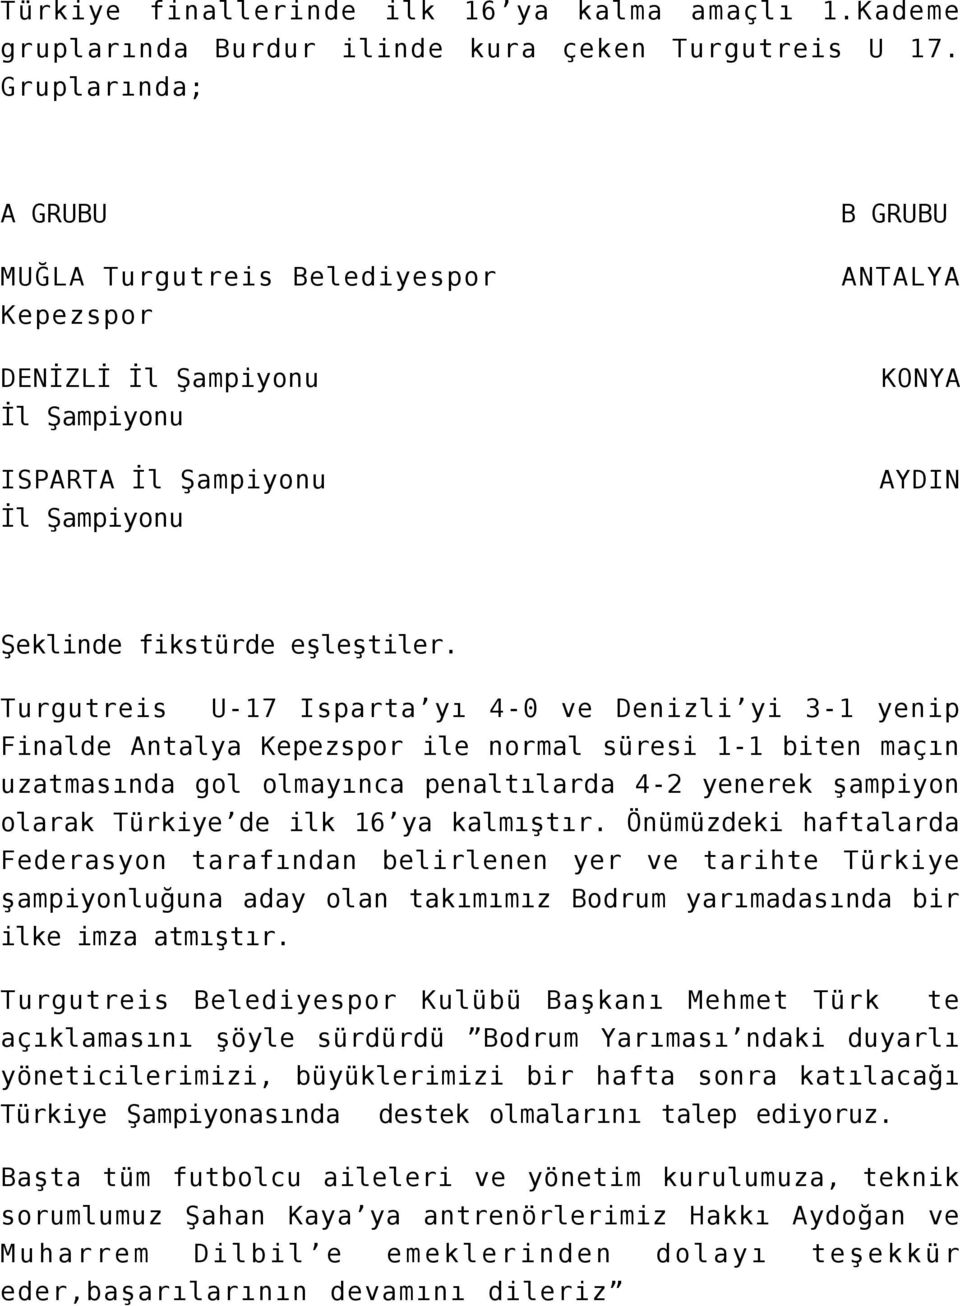 Turgutreis U-17 Isparta yı 4-0 ve Denizli yi 3-1 yenip Finalde Antalya Kepezspor ile normal süresi 1-1 biten maçın uzatmasında gol olmayınca penaltılarda 4-2 yenerek şampiyon olarak Türkiye de ilk 16